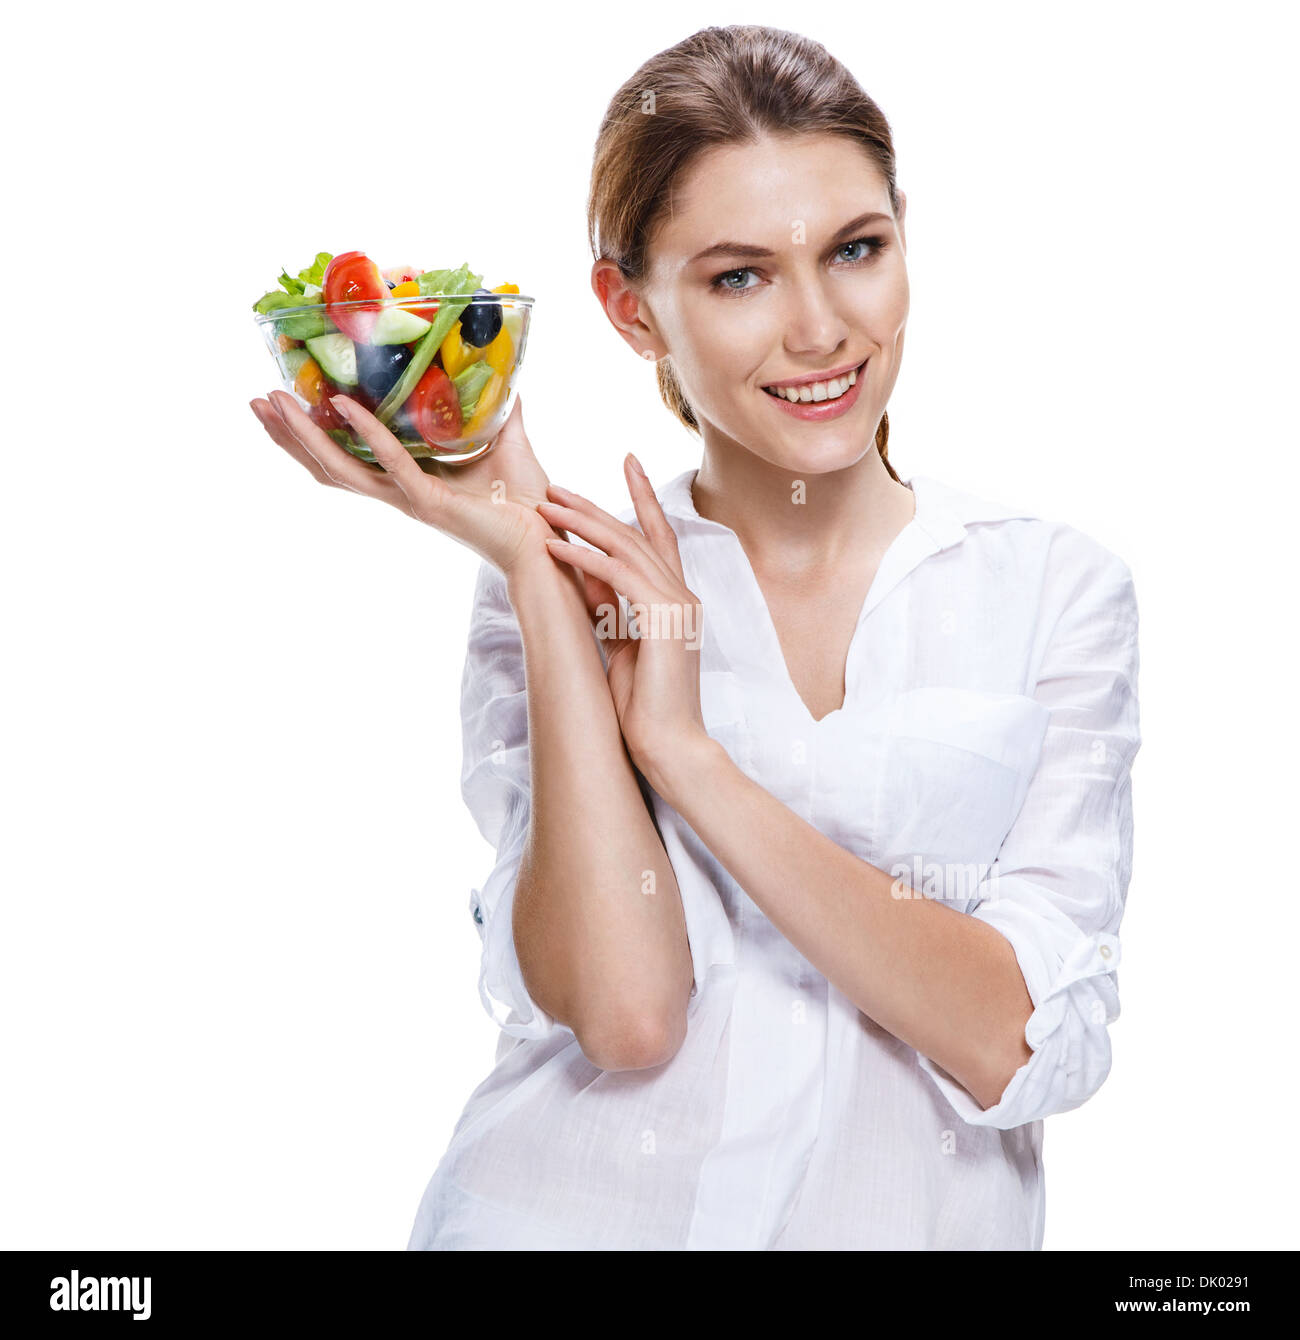 Träller femme européenne et légumes salade - isolé sur fond blanc Banque D'Images